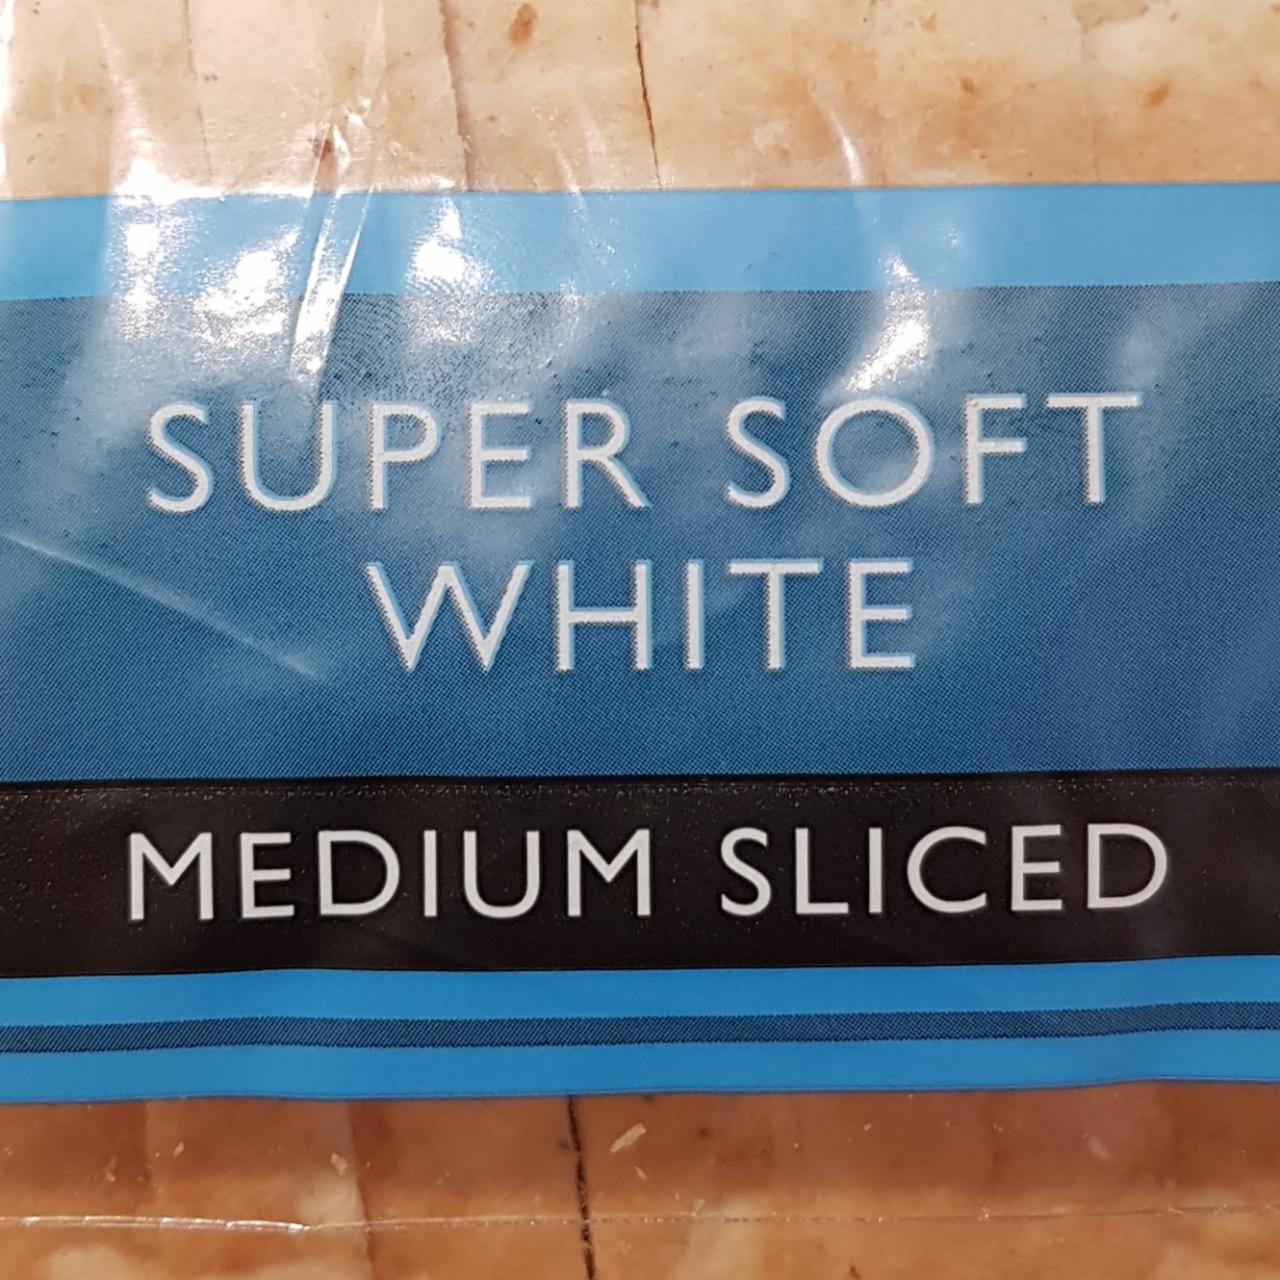 Fotografie - Waitrose Super soft white bread medium sliced